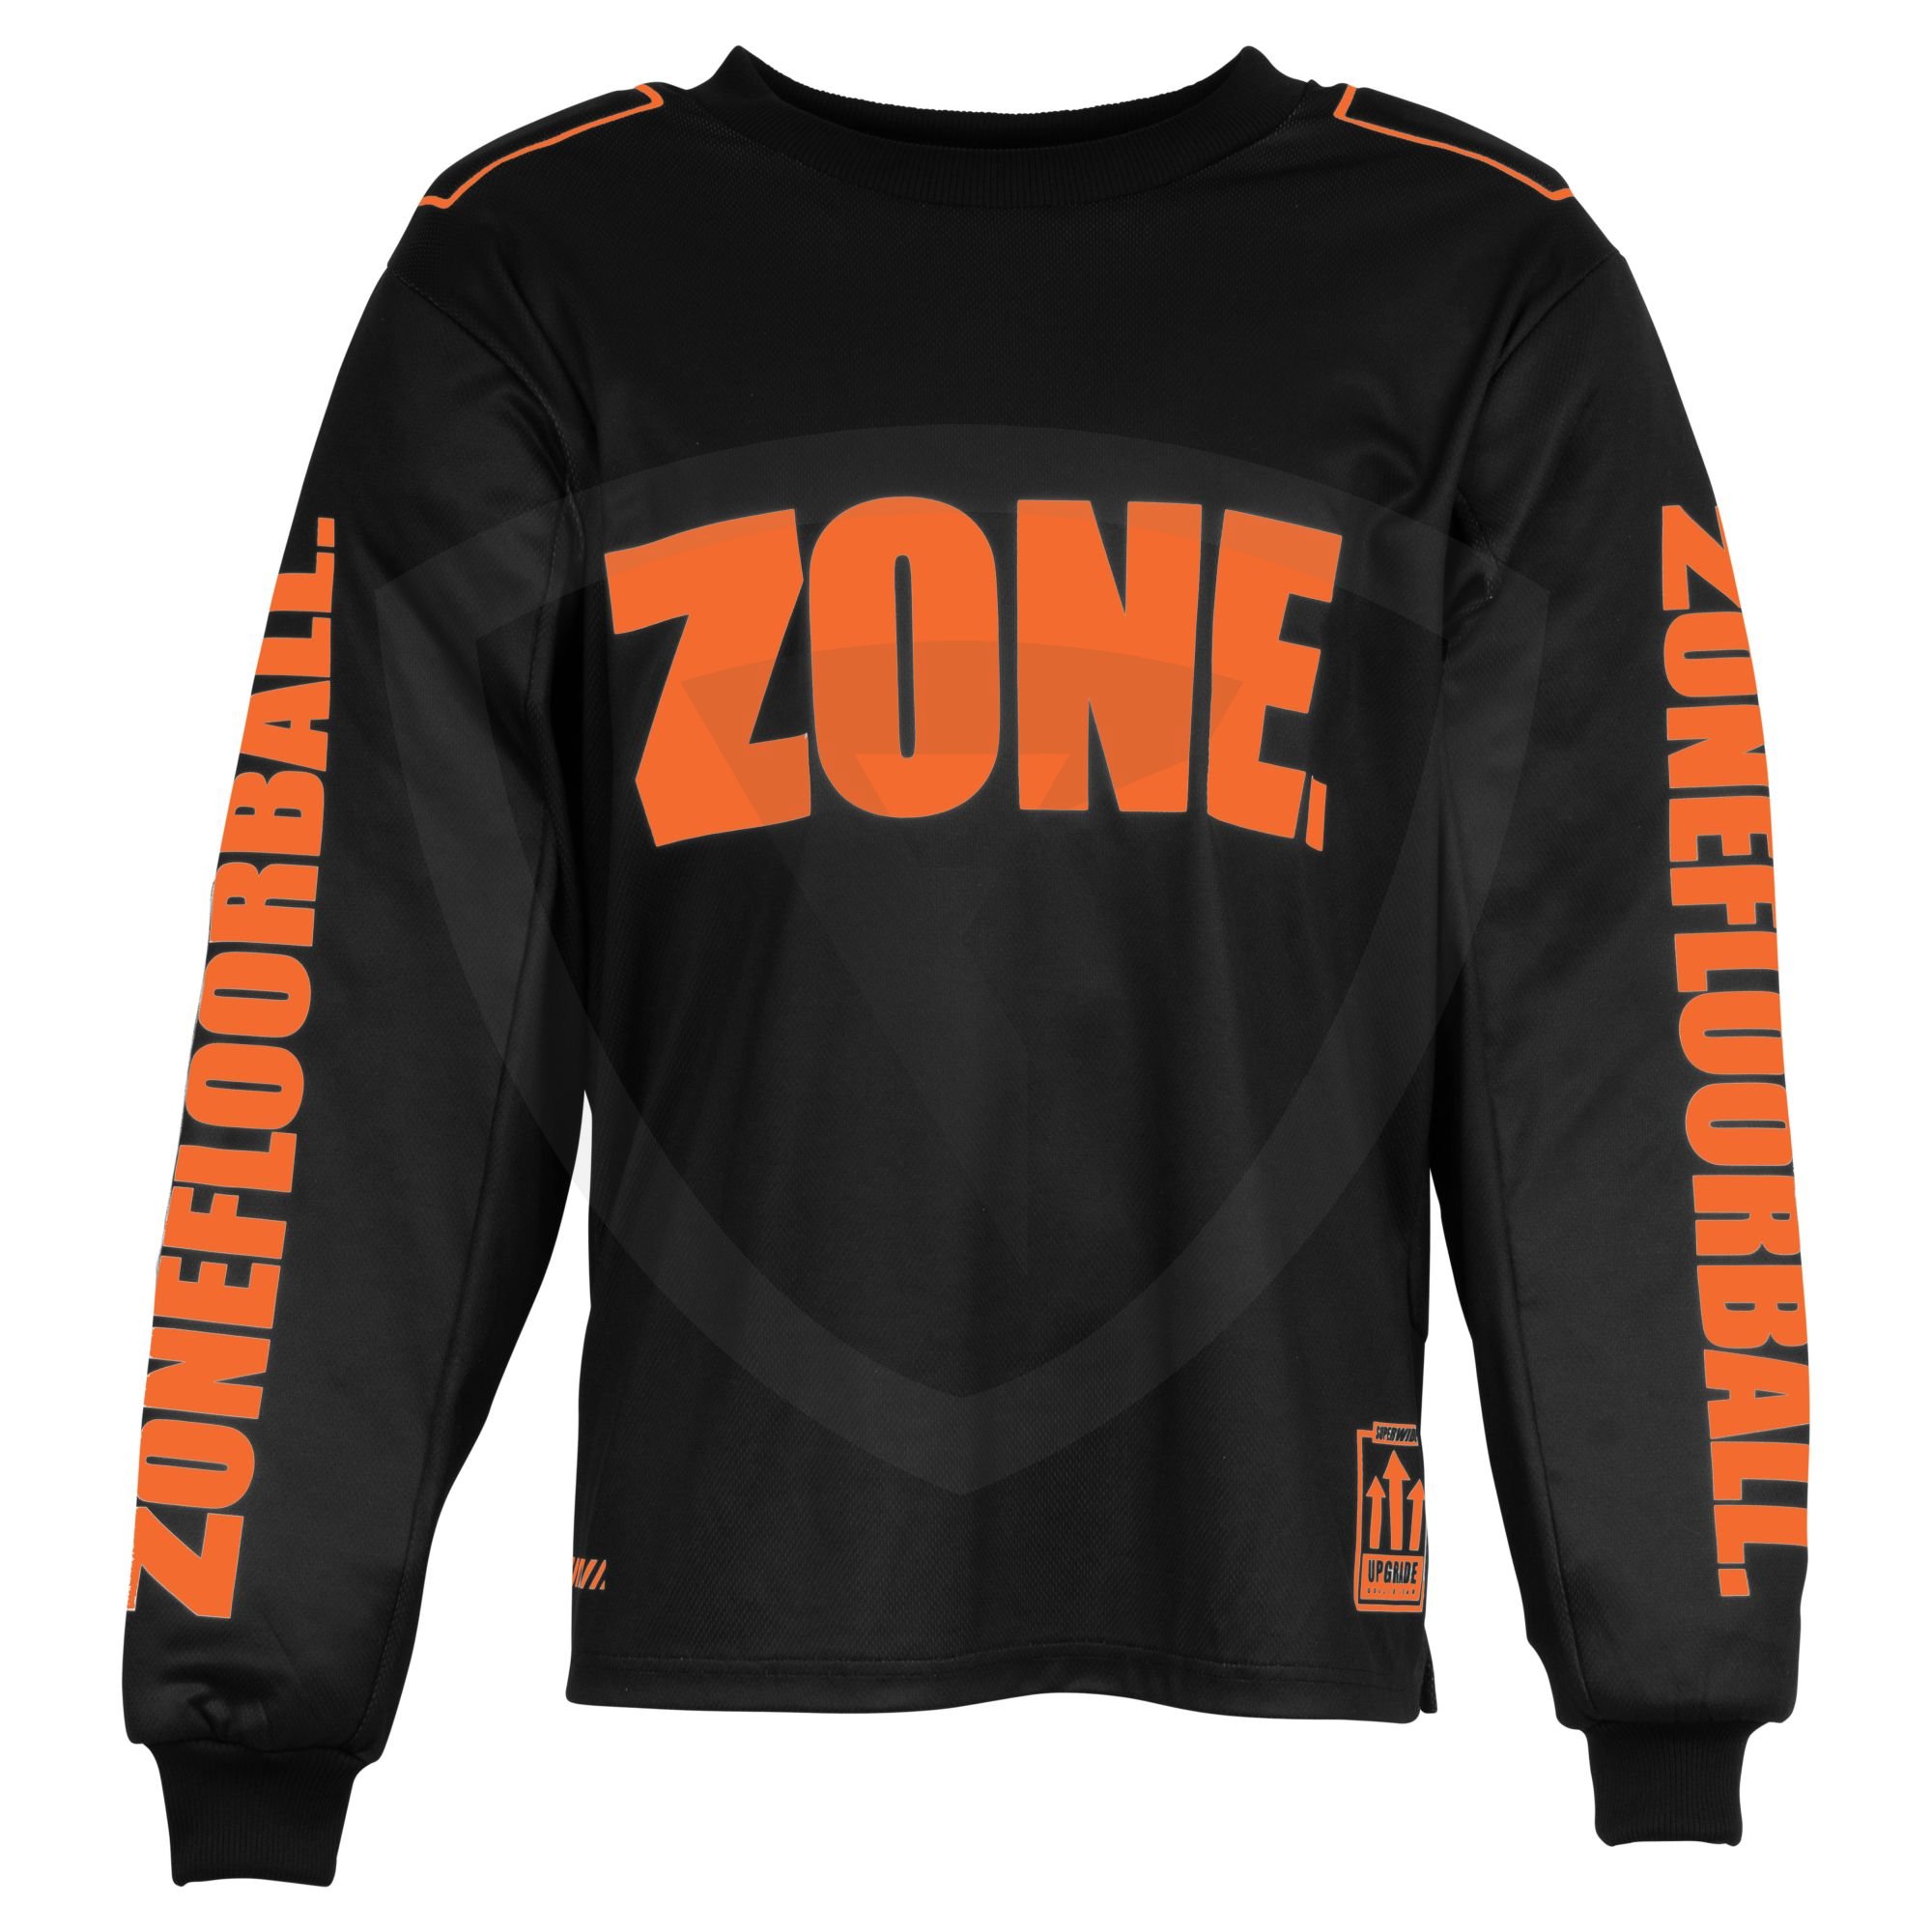 Zone UPGRADE SW Goalie Sweater SR. Black-Lava Orange XS černá-oranžová